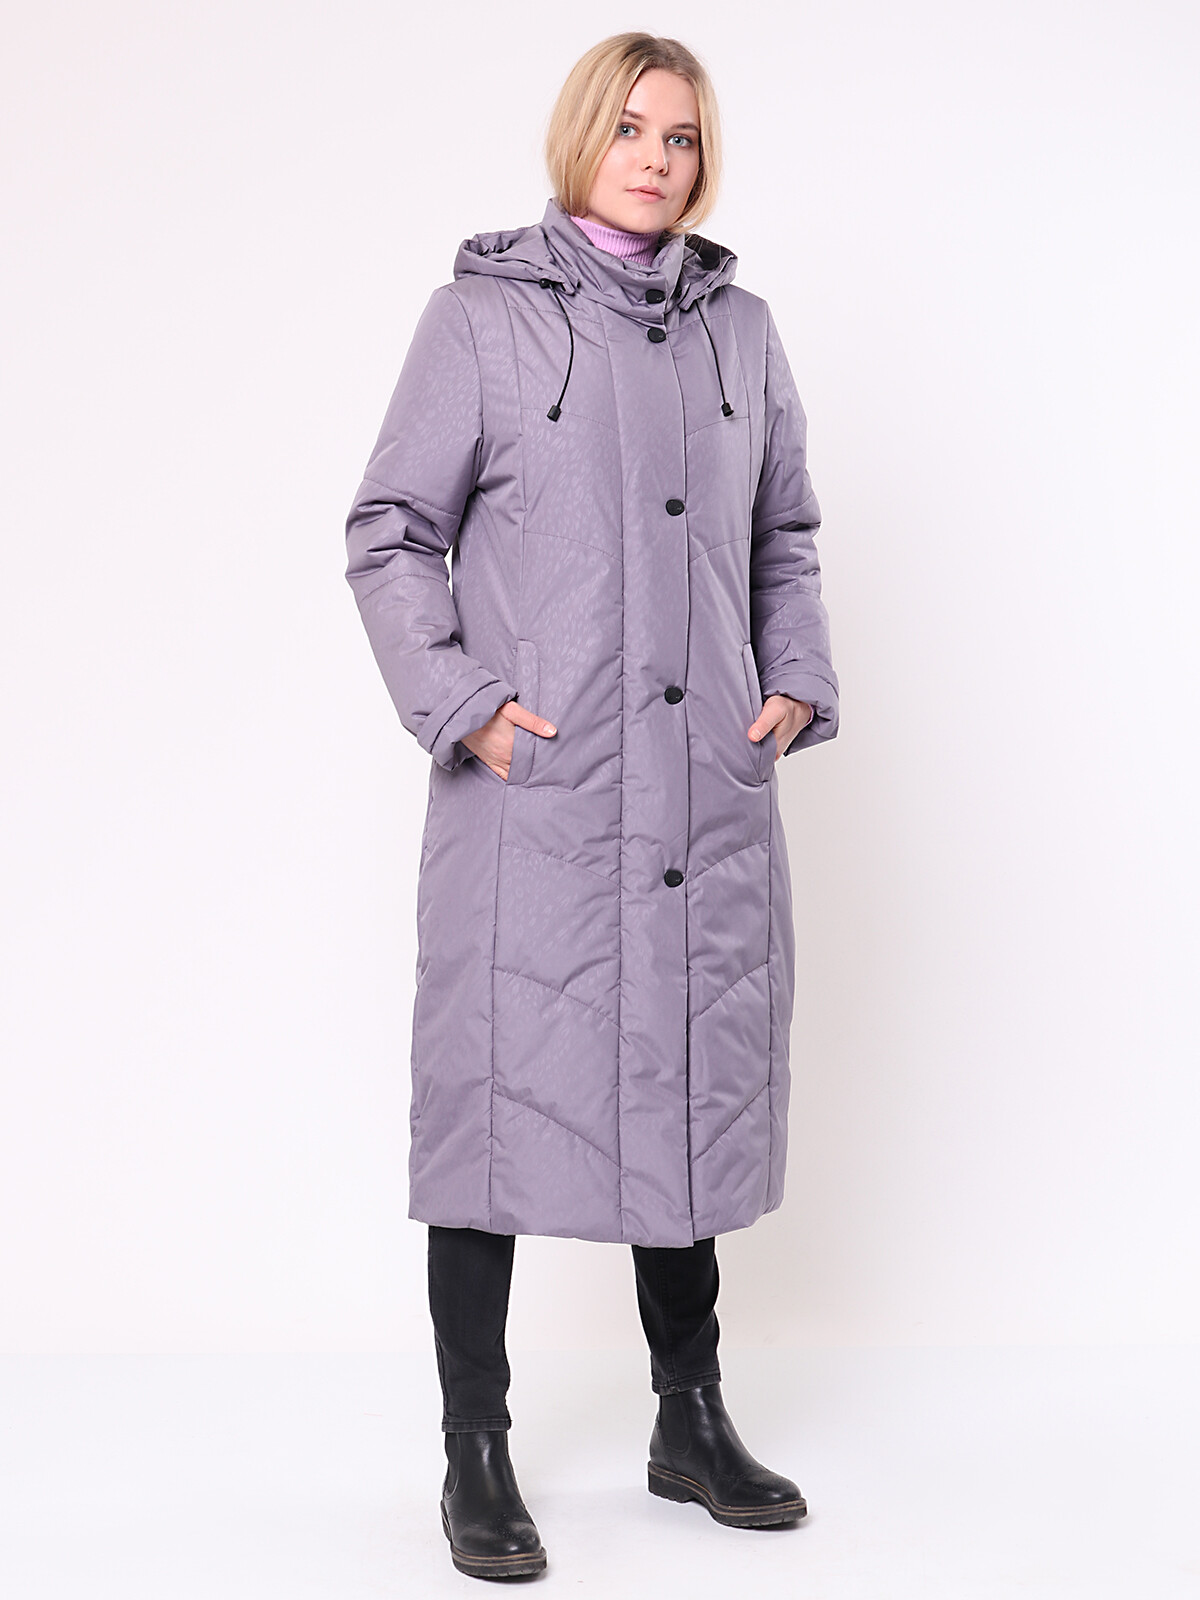 фото Куртка женская maritta 20-1016-18 фиолетовая 48 eu